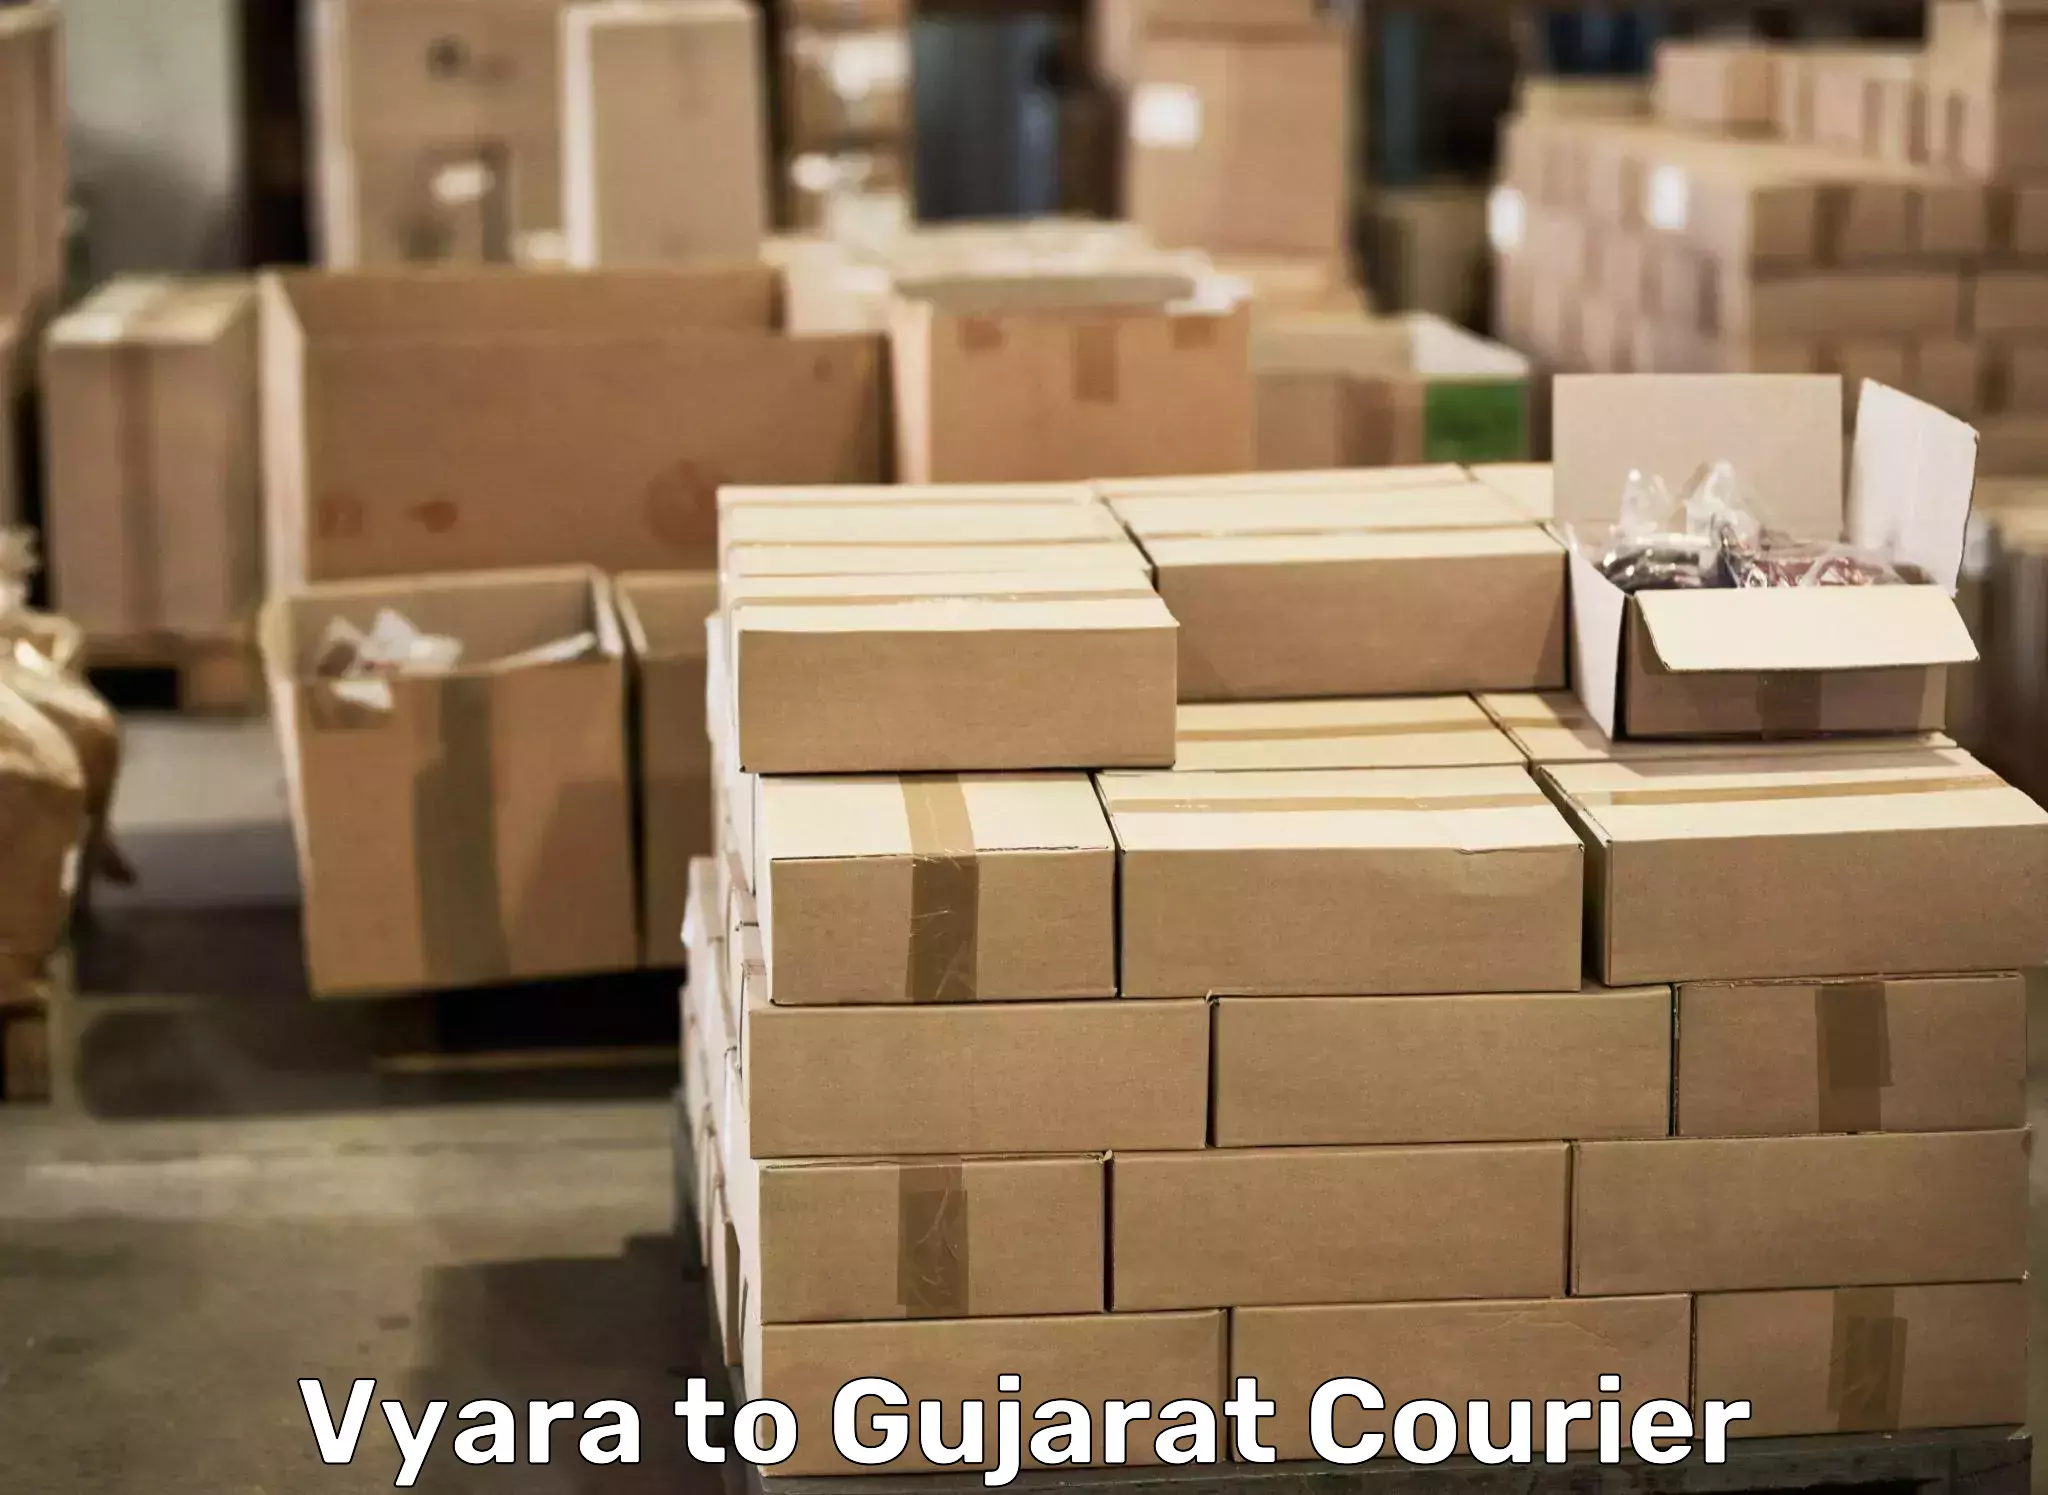 Moving and packing experts Vyara to Rapar